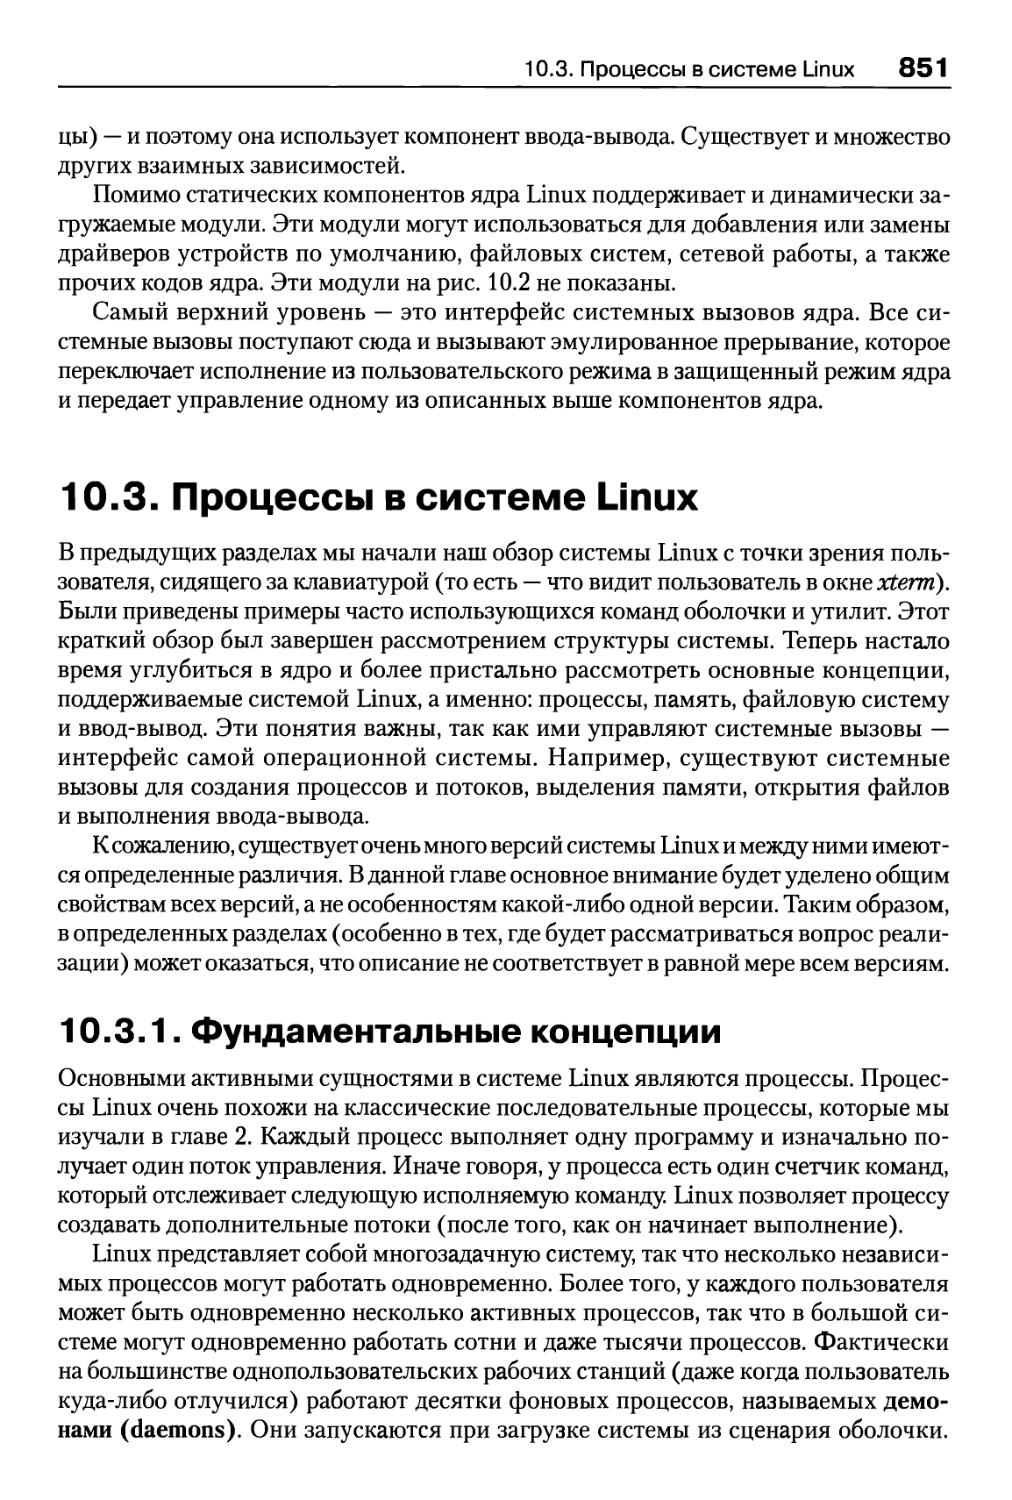 10.3. Процессы в системе Linux